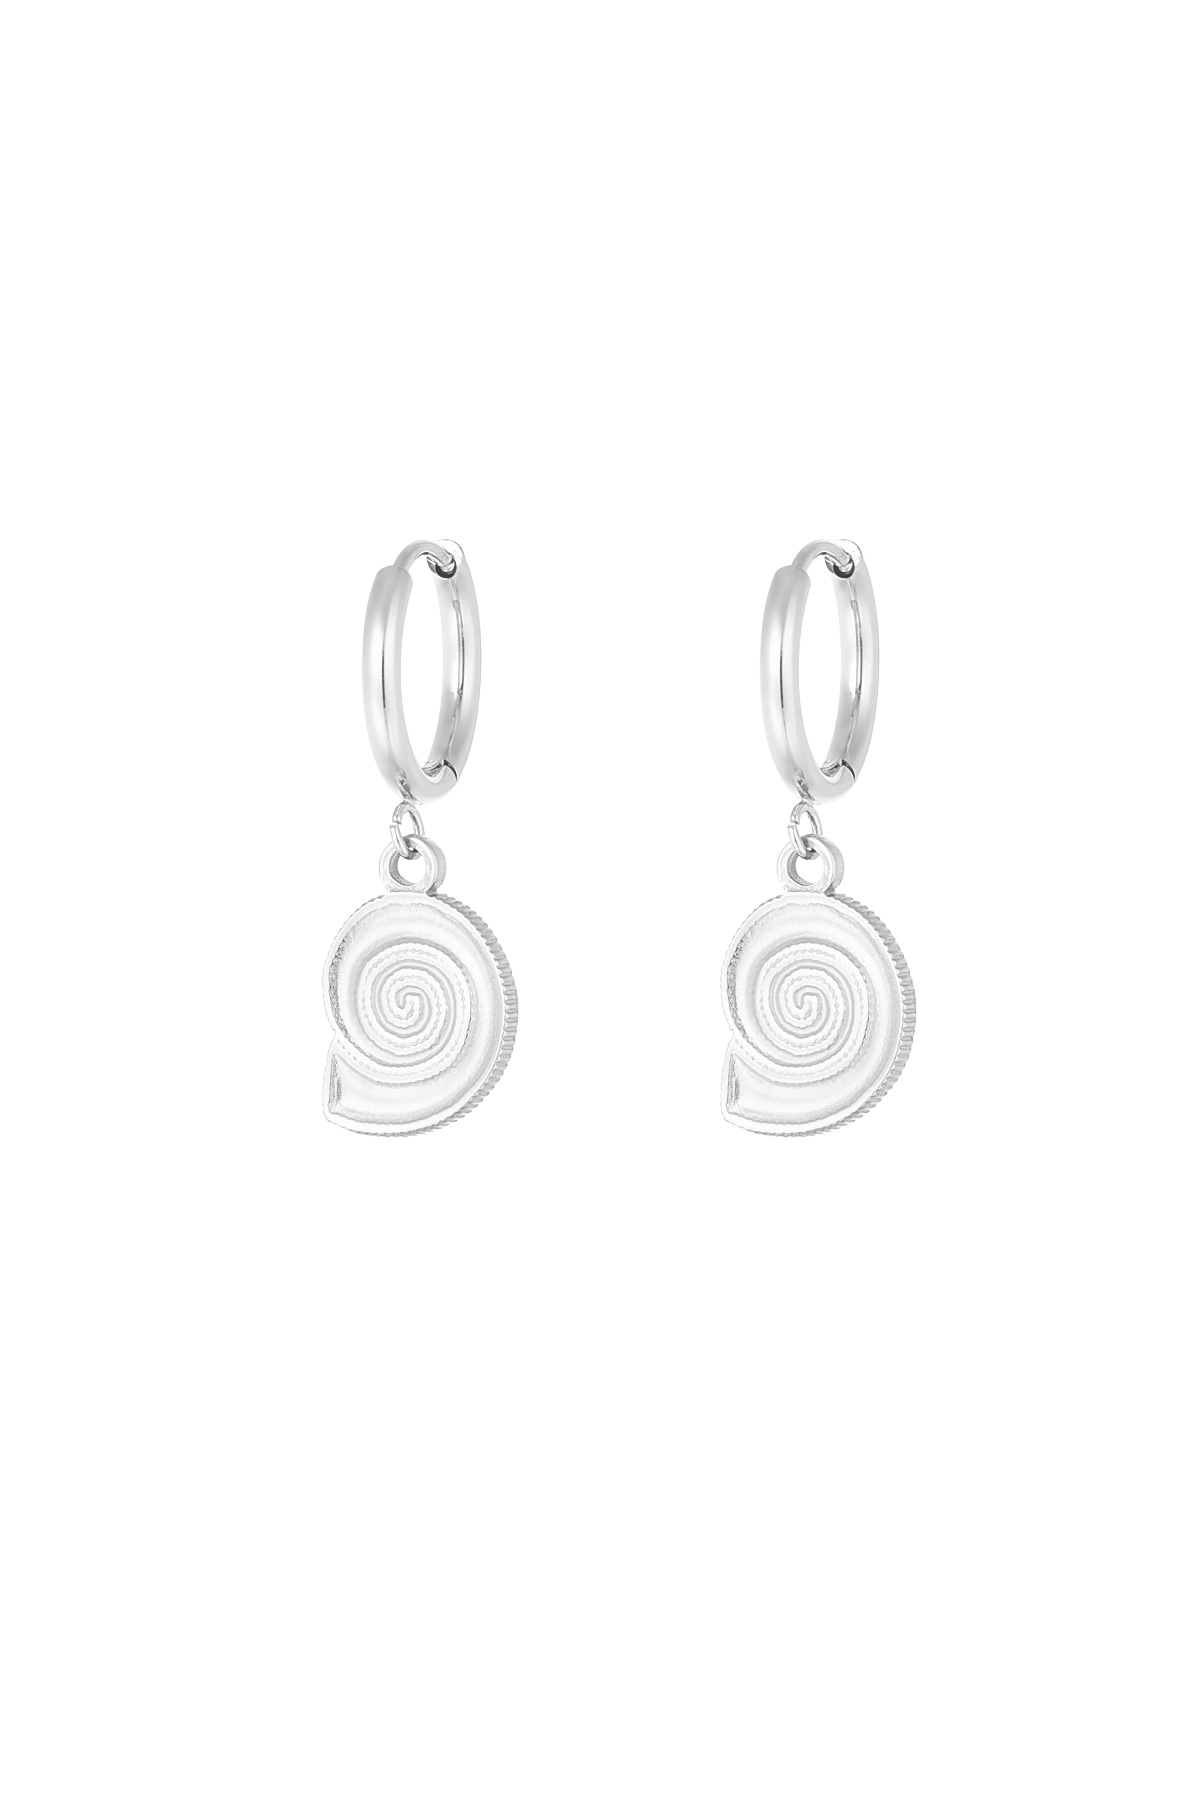 Earrings shell swirl - silver h5 